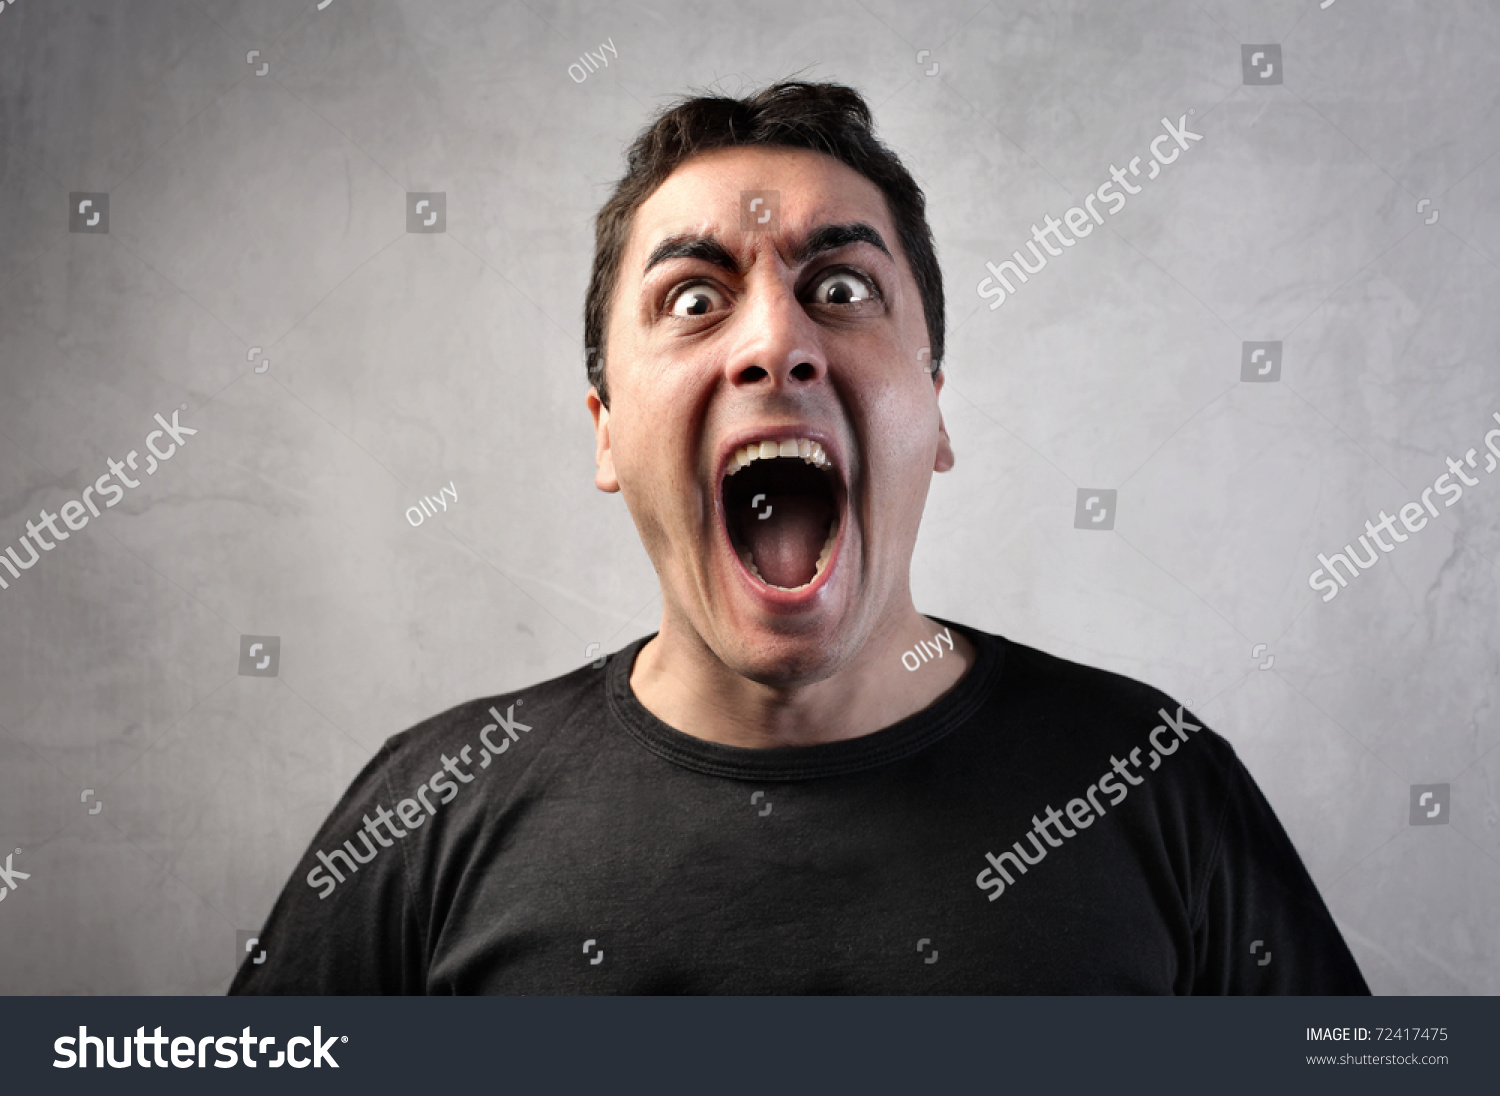 Man Shouting Stock Photo 72417475 - Shutterstock